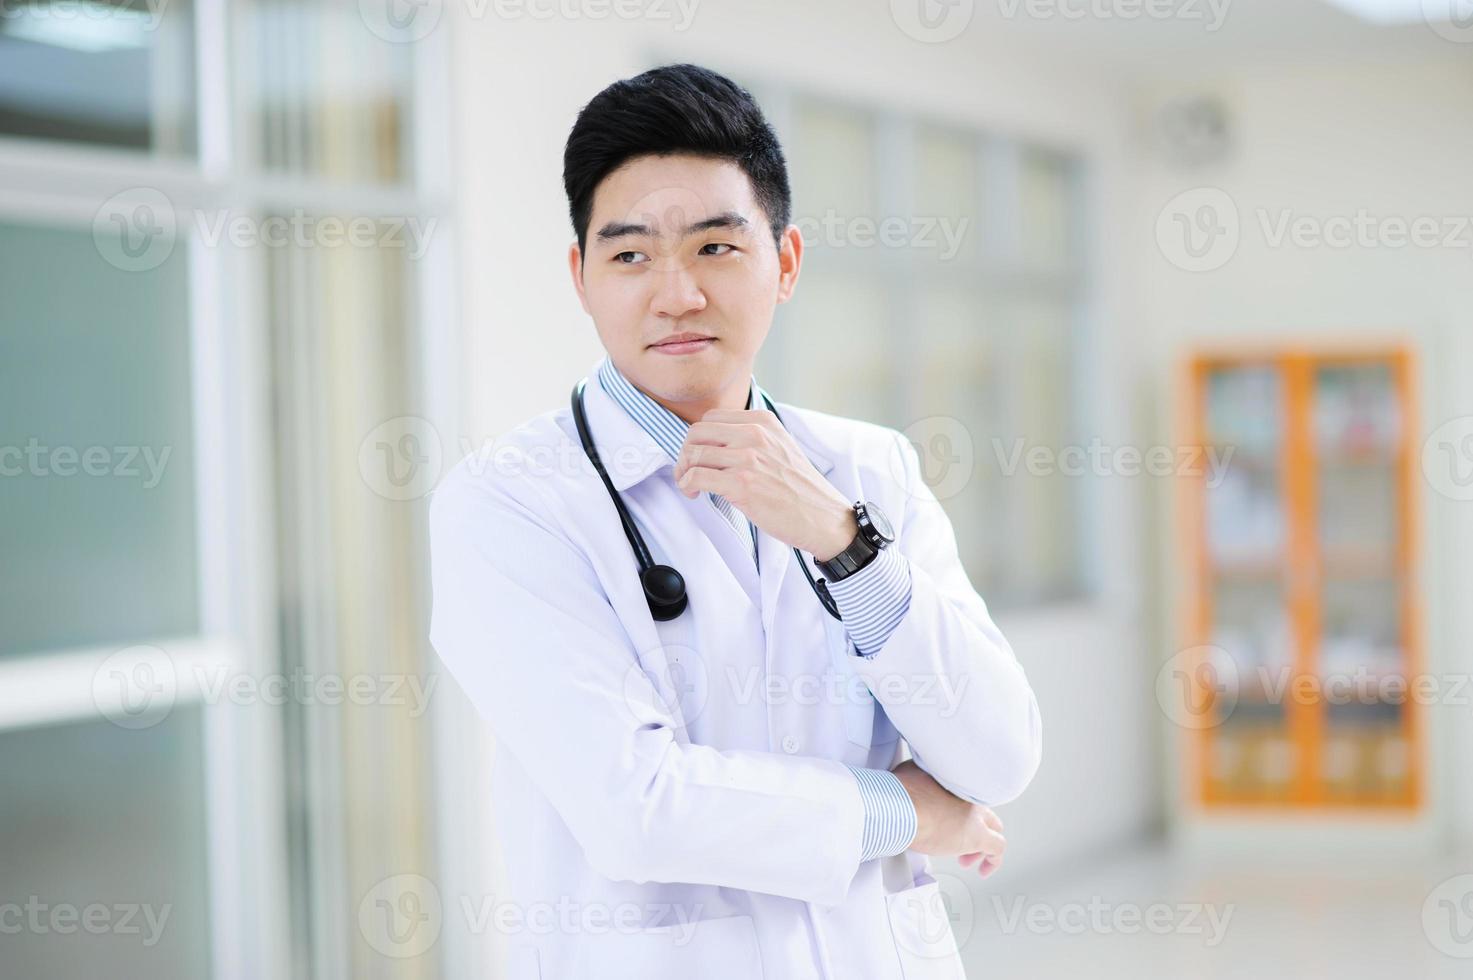 junger asiatischer Arzt foto